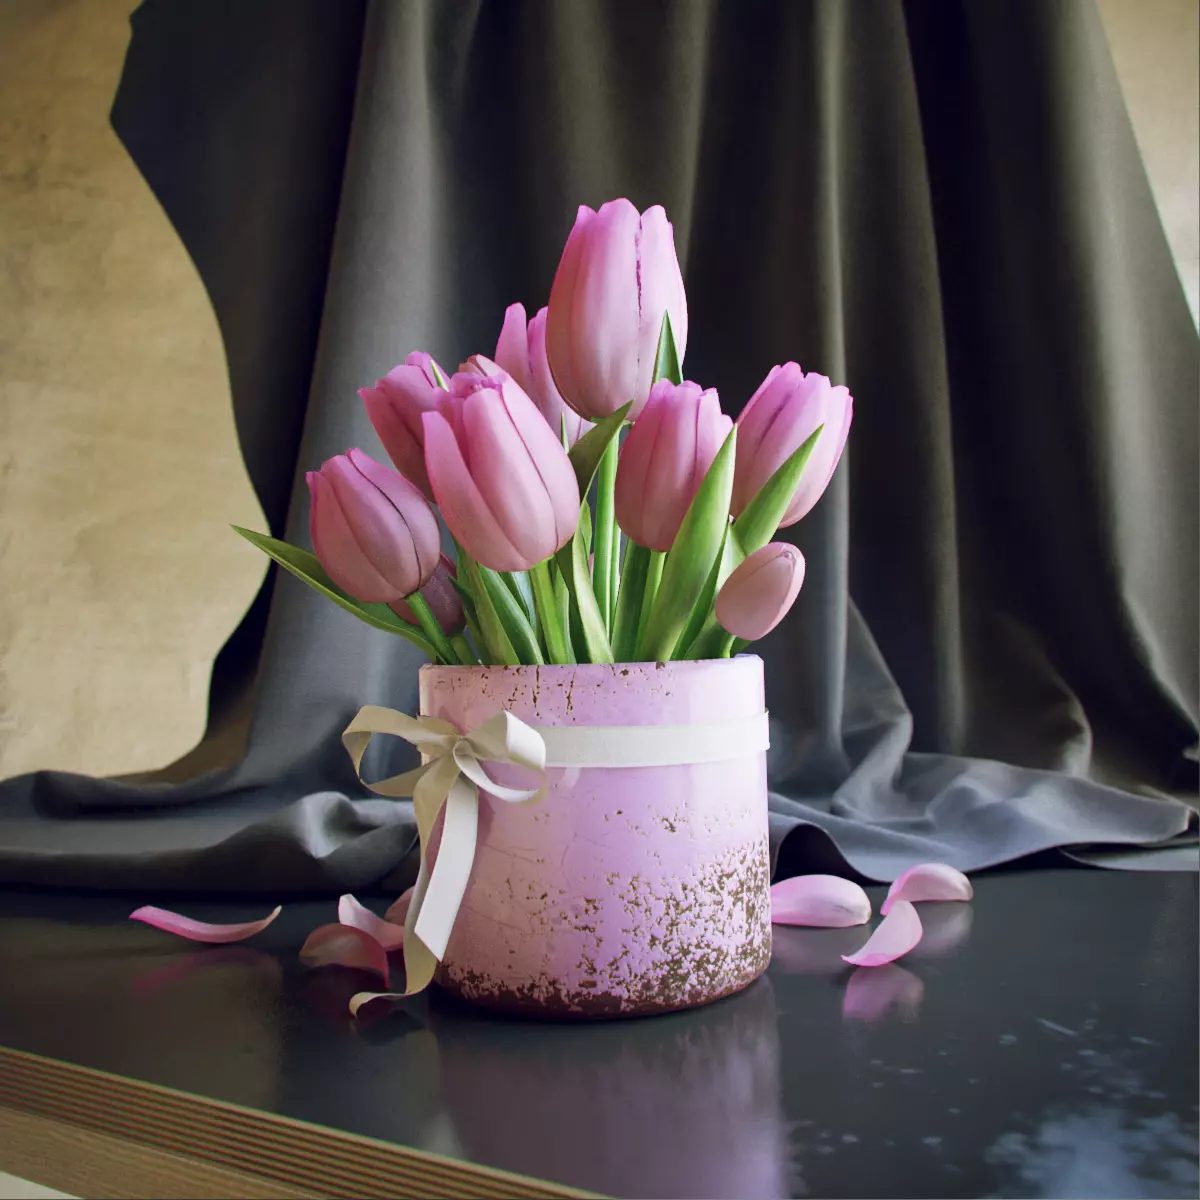 Virágok március 8-án: Mit adnak a lányok és a nők? Mi jobb, ha feleségem adni? Mit adnak el általában? Miért lehetséges a tulipánok megadása? 18190_24